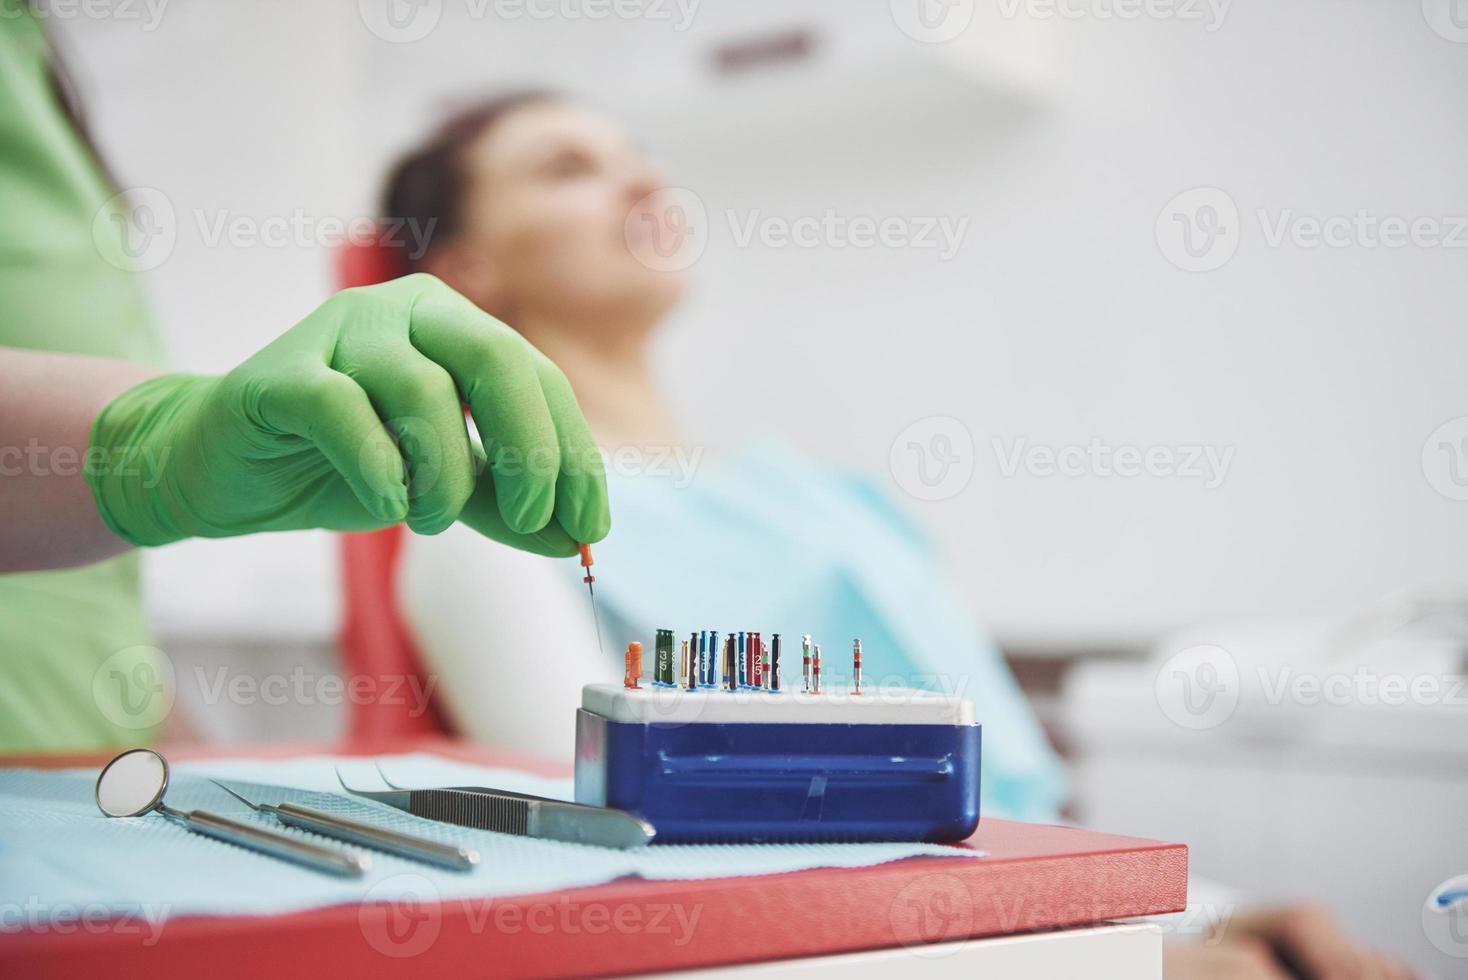 un patient dans une clinique dentaire est assis sur une chaise et le médecin prépare les outils pour le traitement photo